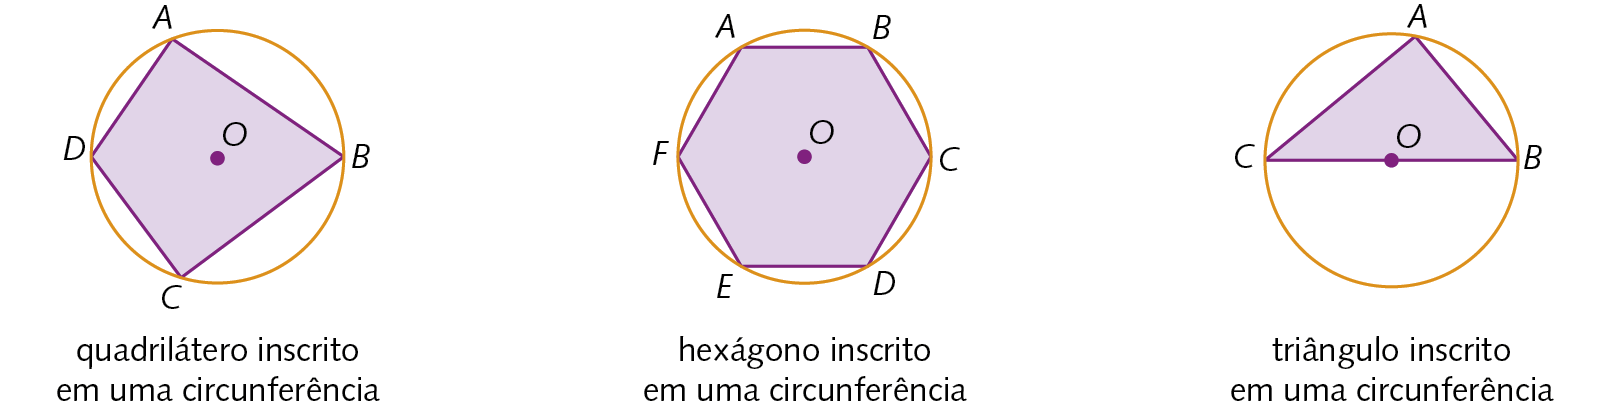 Figura geométrica. Circunferência de centro O. Dentro, quadrilátero ABCD com os vértices pertencentes à circunferência. Cota: quadrilátero inscrito em uma circunferência. Ao lado, figura geométrica. Circunferência de centro O. Dentro, hexágono ABCDEF com os vértices pertencentes à circunferência. Cota: quadrilátero inscrito em uma circunferência. Ao lado, figura geométrica. Circunferência de centro O. Dentro, triângulo ABC com os vértices pertencentes à circunferência. Ponto O pertence ao lado BC do triângulo. Cota: triângulo inscrito em uma circunferência.